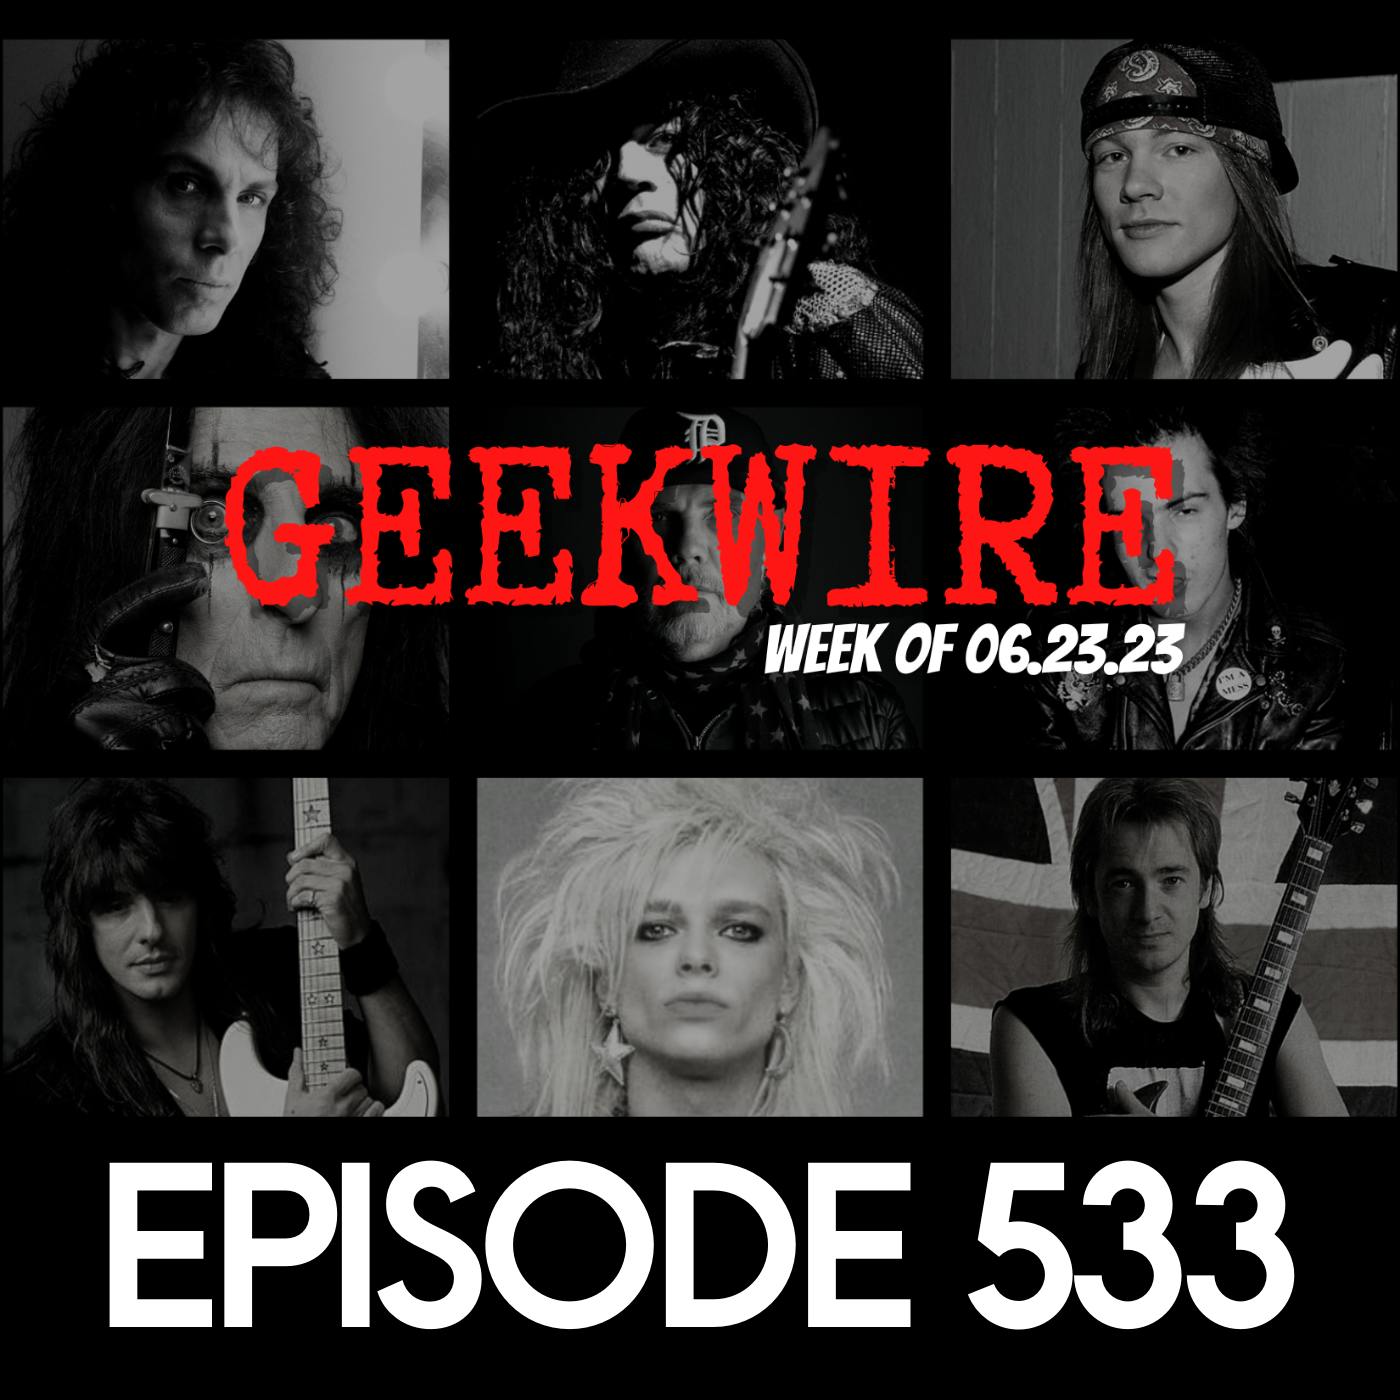 Geekwire Week of 06.23.23 - Ep533